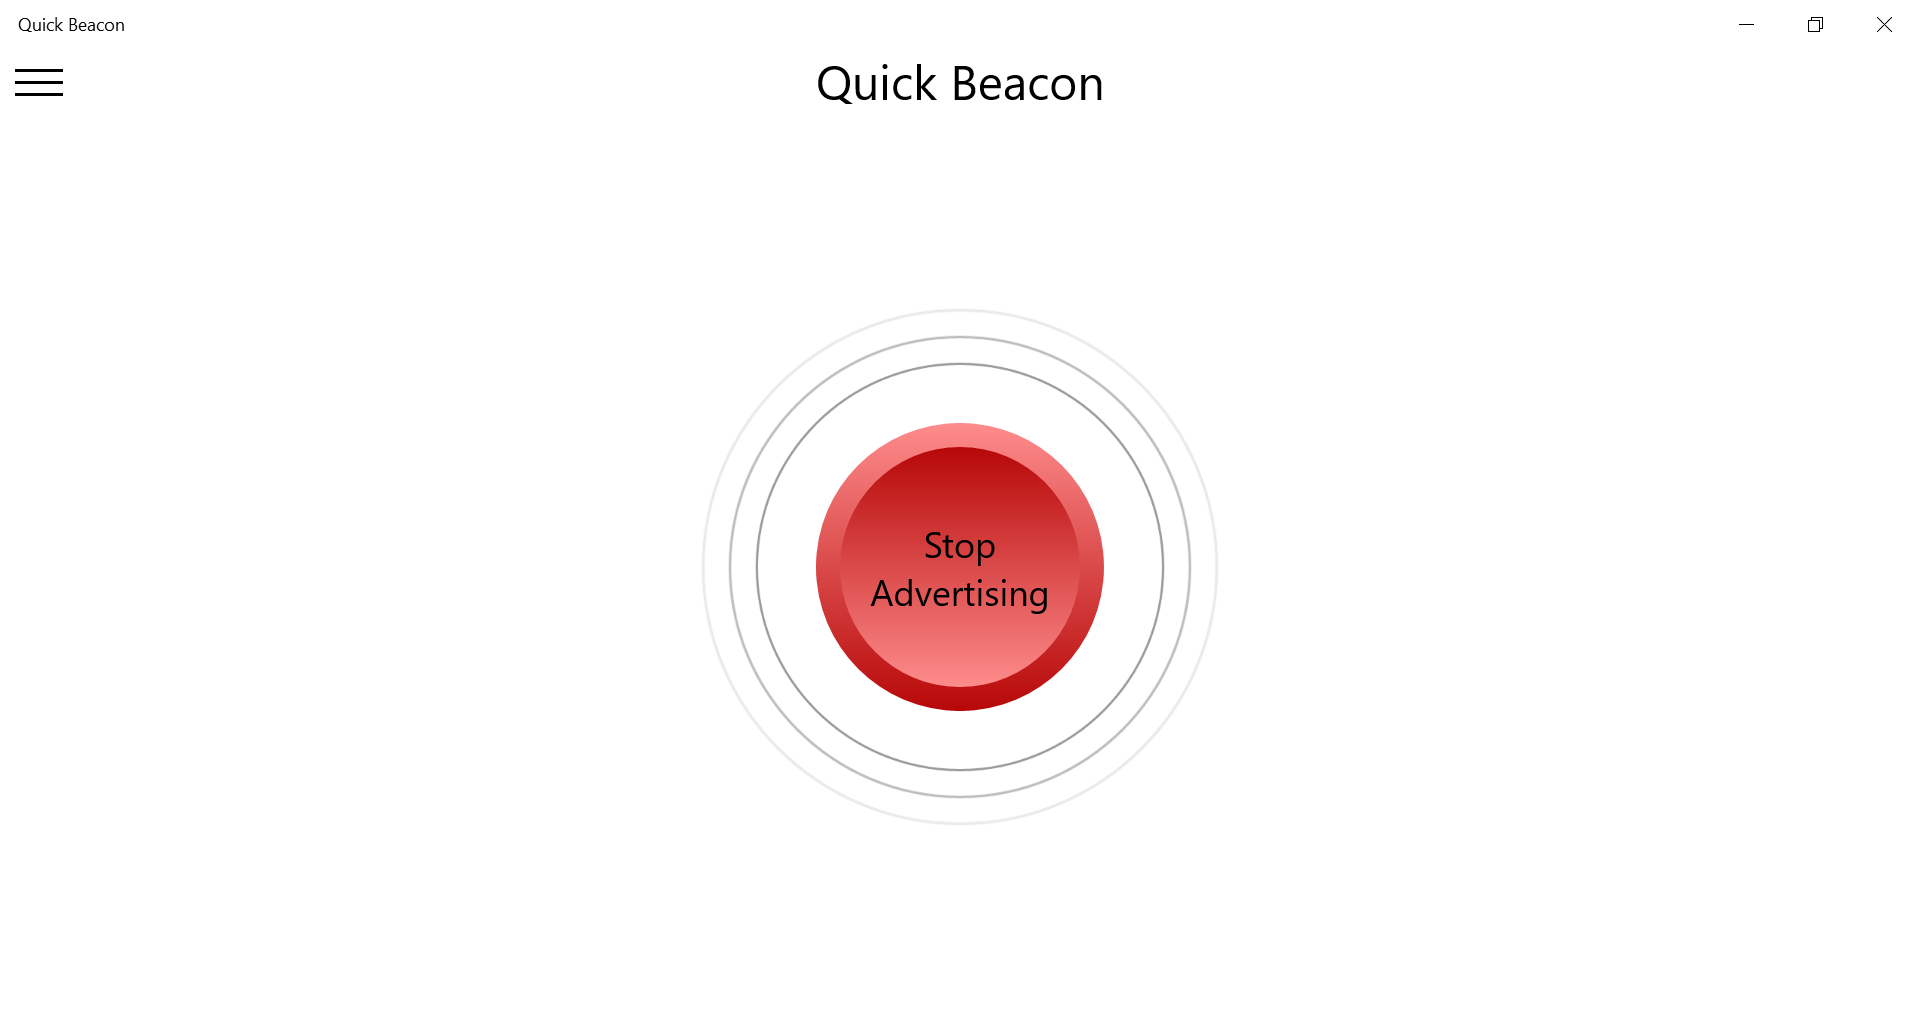 Quick Beacon